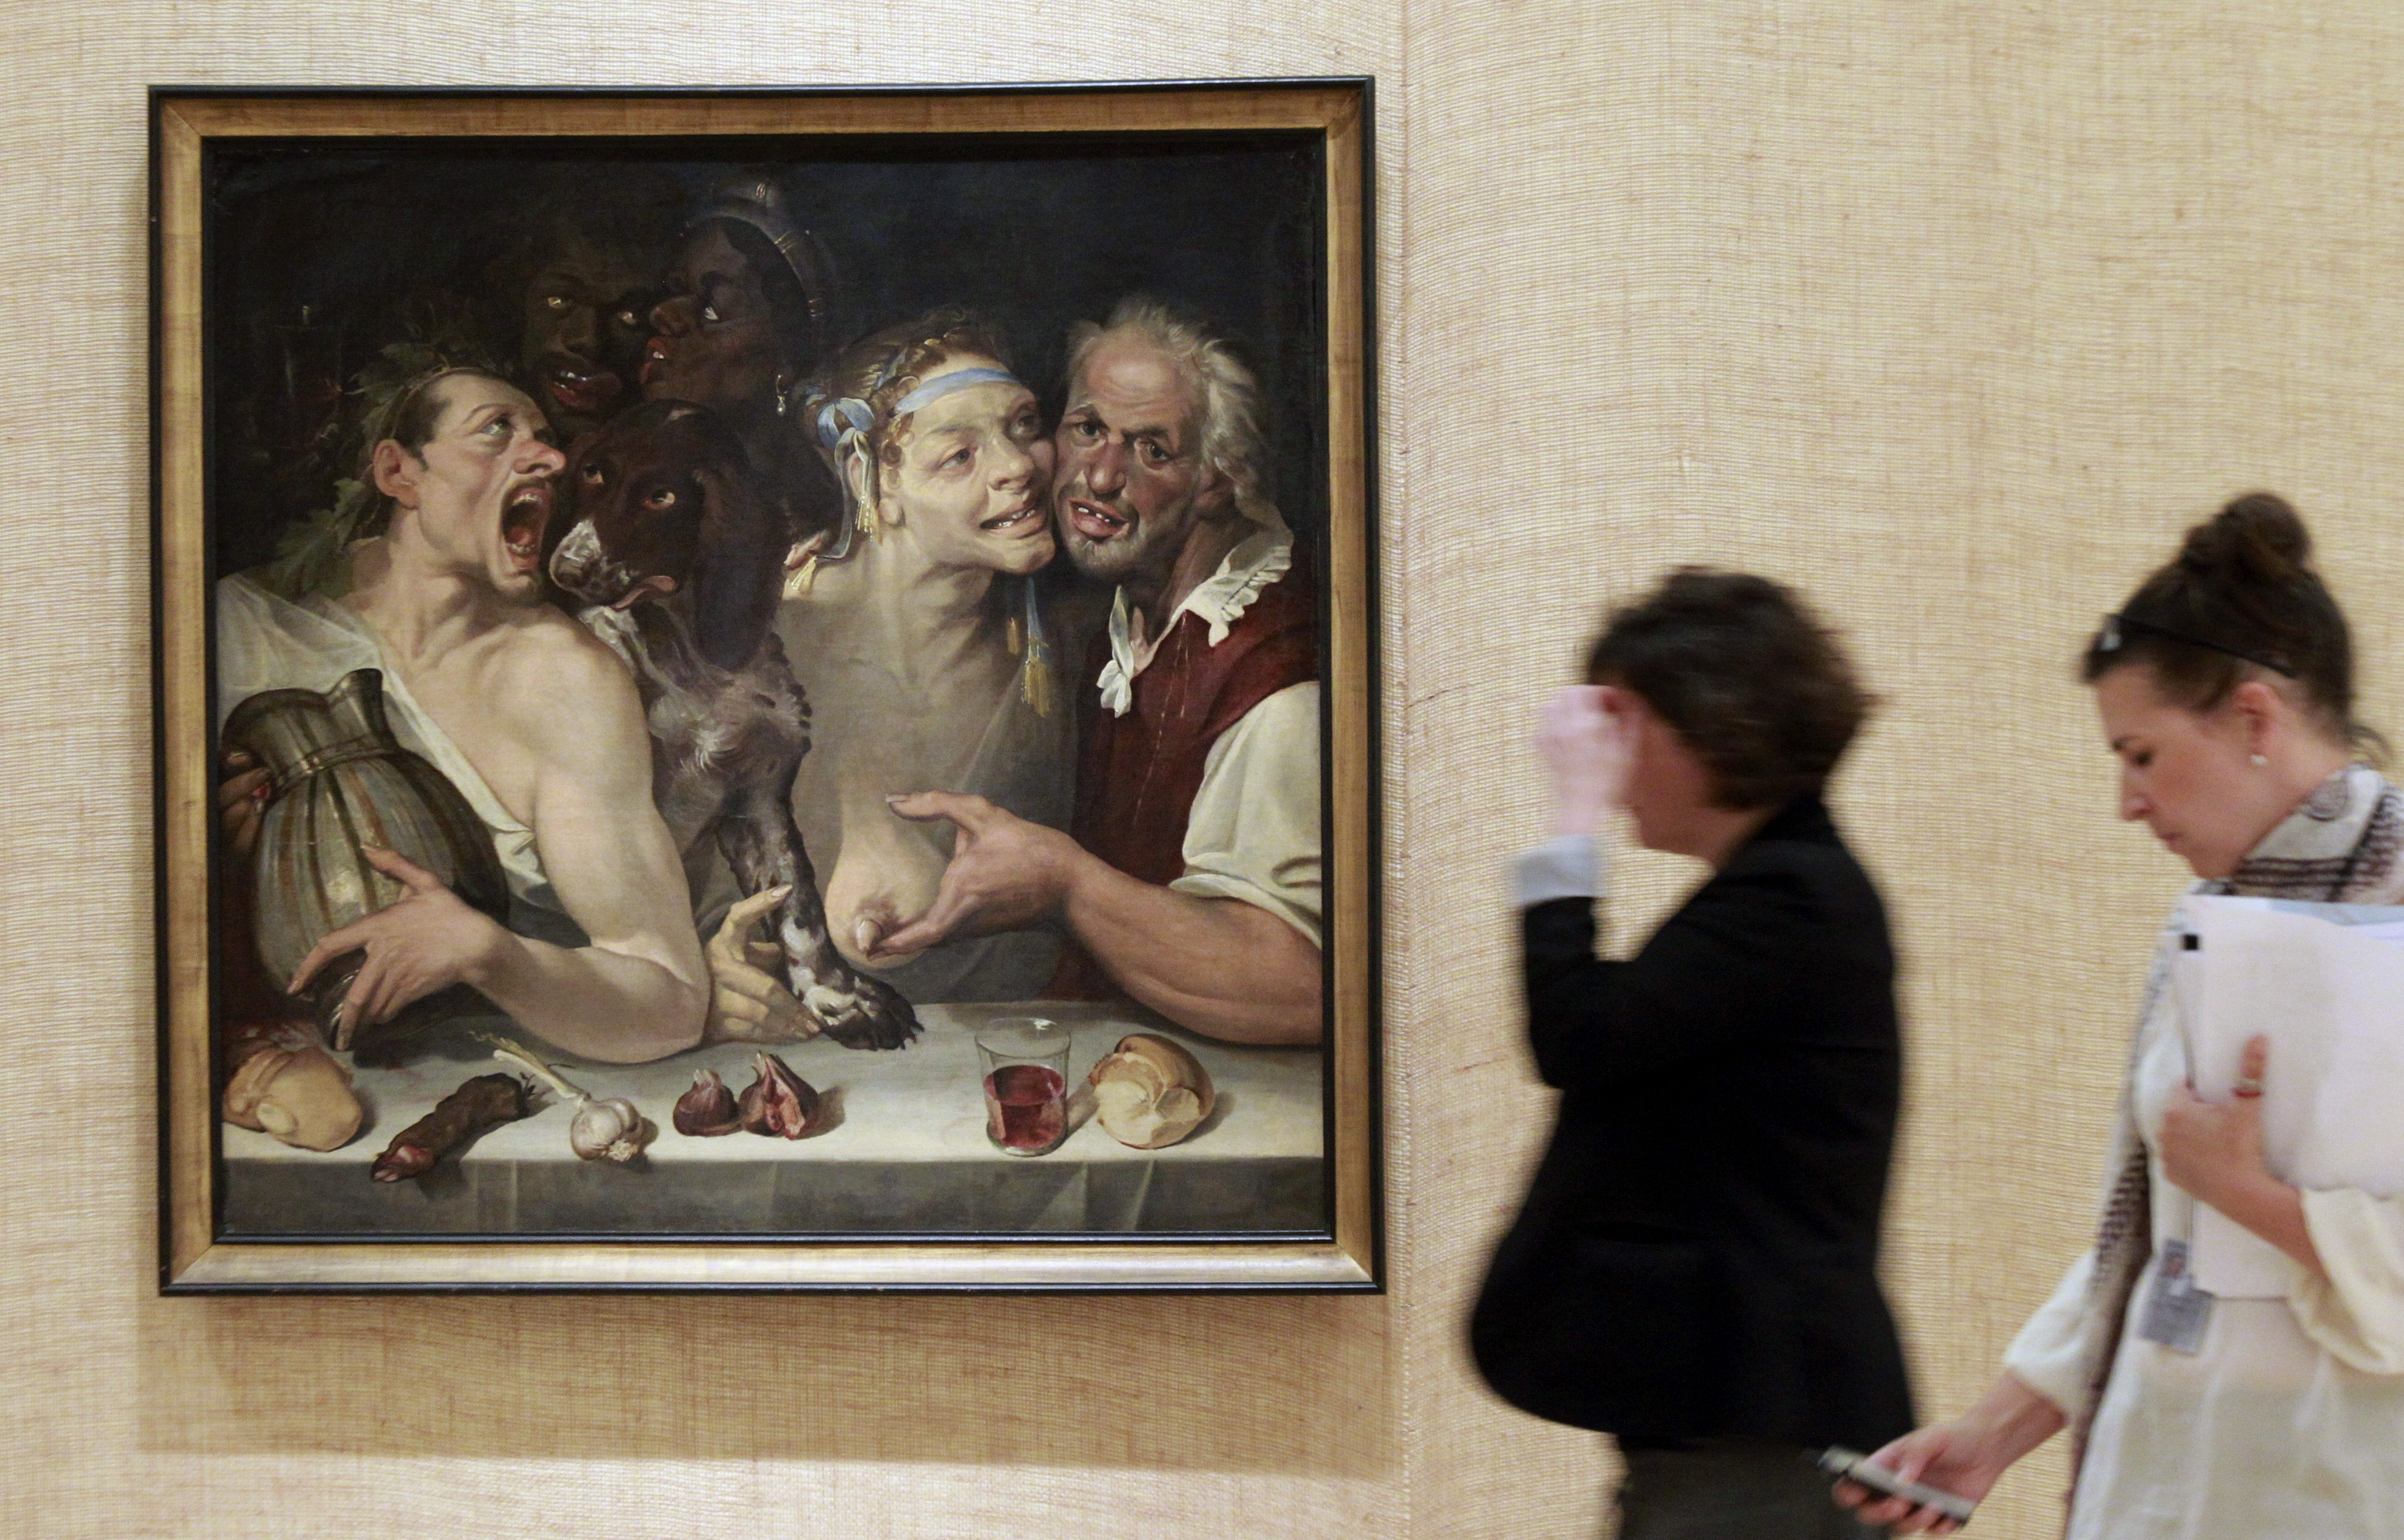 Obras barrocas y contemporáneas unidas por la exuberancia, en el Guggenheim